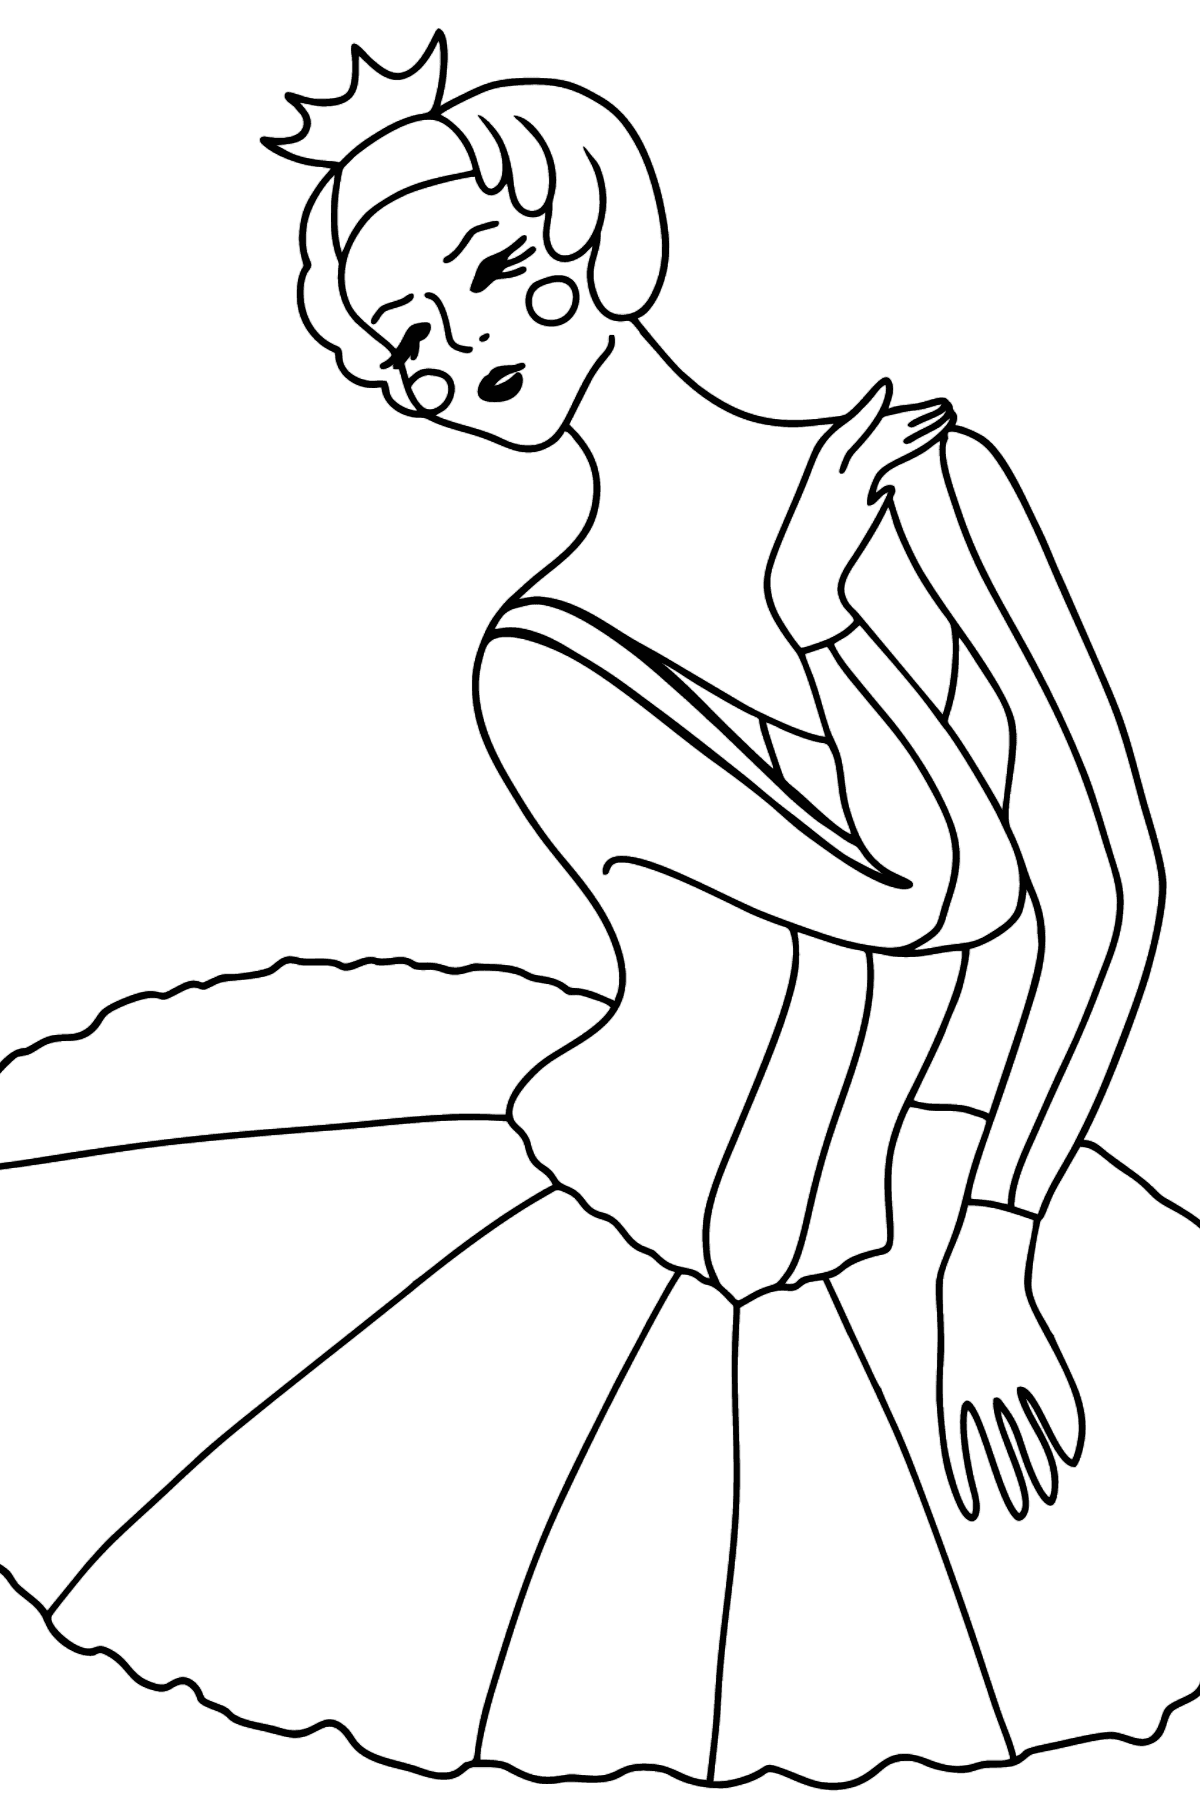 Раскраска Балерина в Пачке - Картинки для Детей